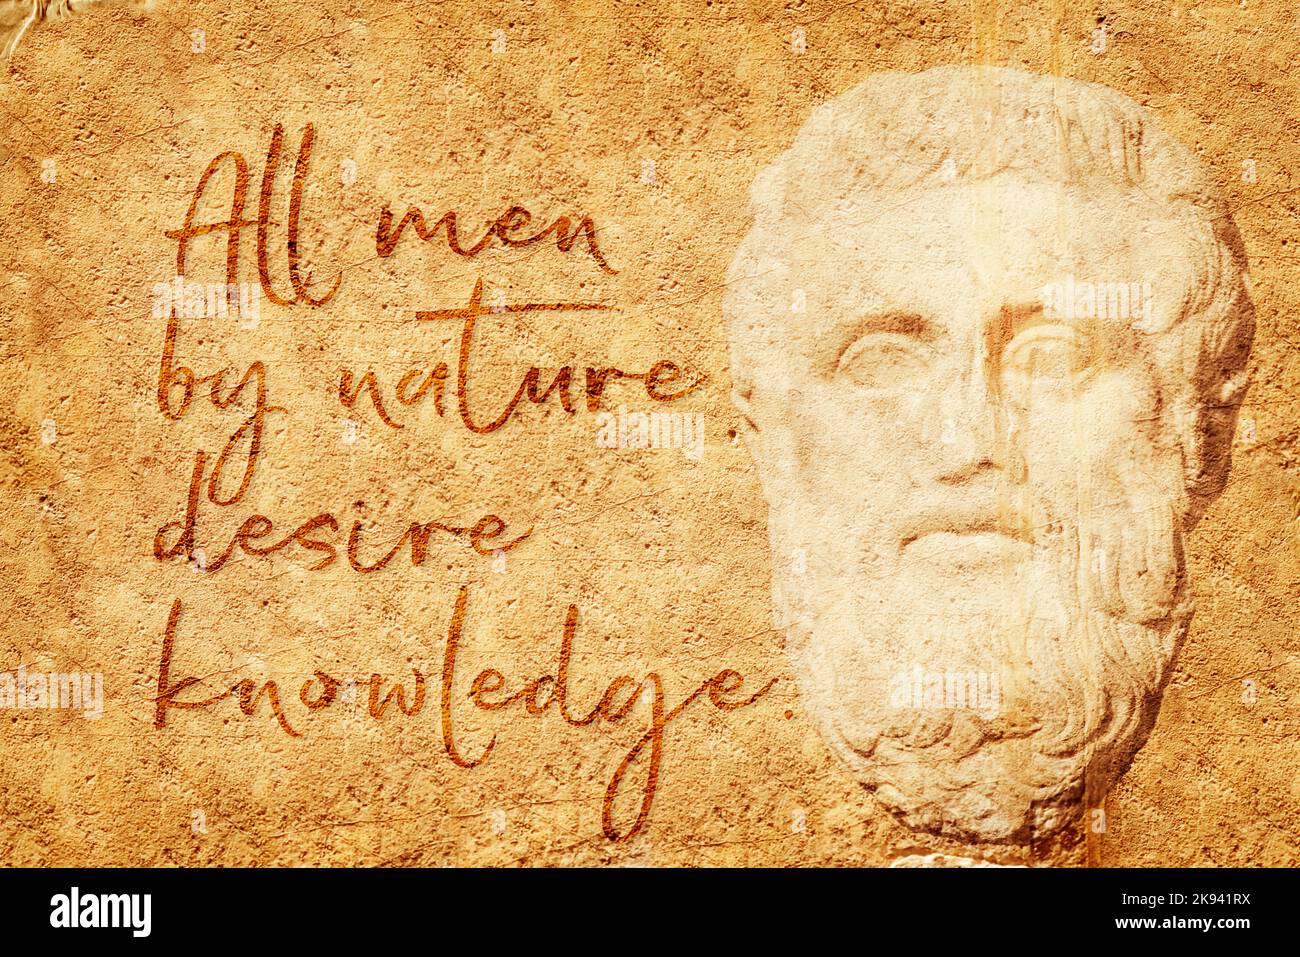 Tutti gli uomini per natura desiderio conoscenza - famosa citazione del filosofo greco antico Aristotele scritto su muro di pietra con rilievo scolpito Foto Stock